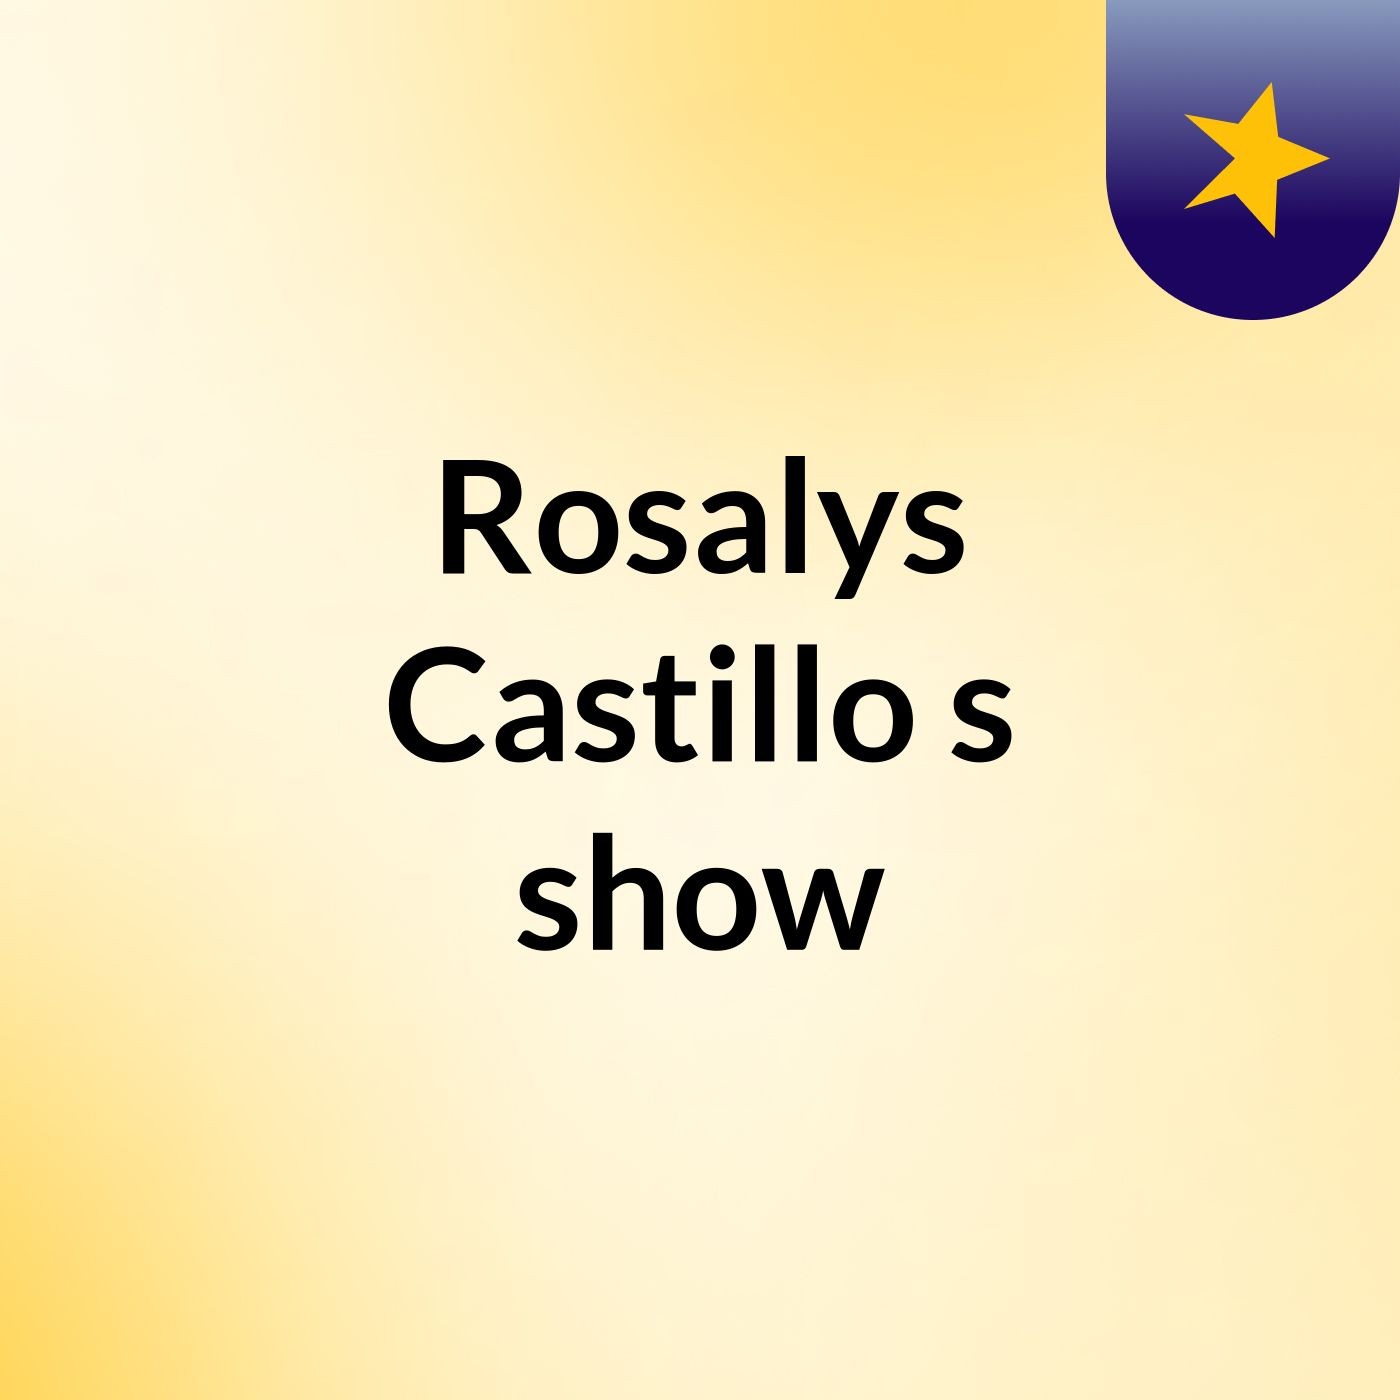 Rosalys Castillo's show